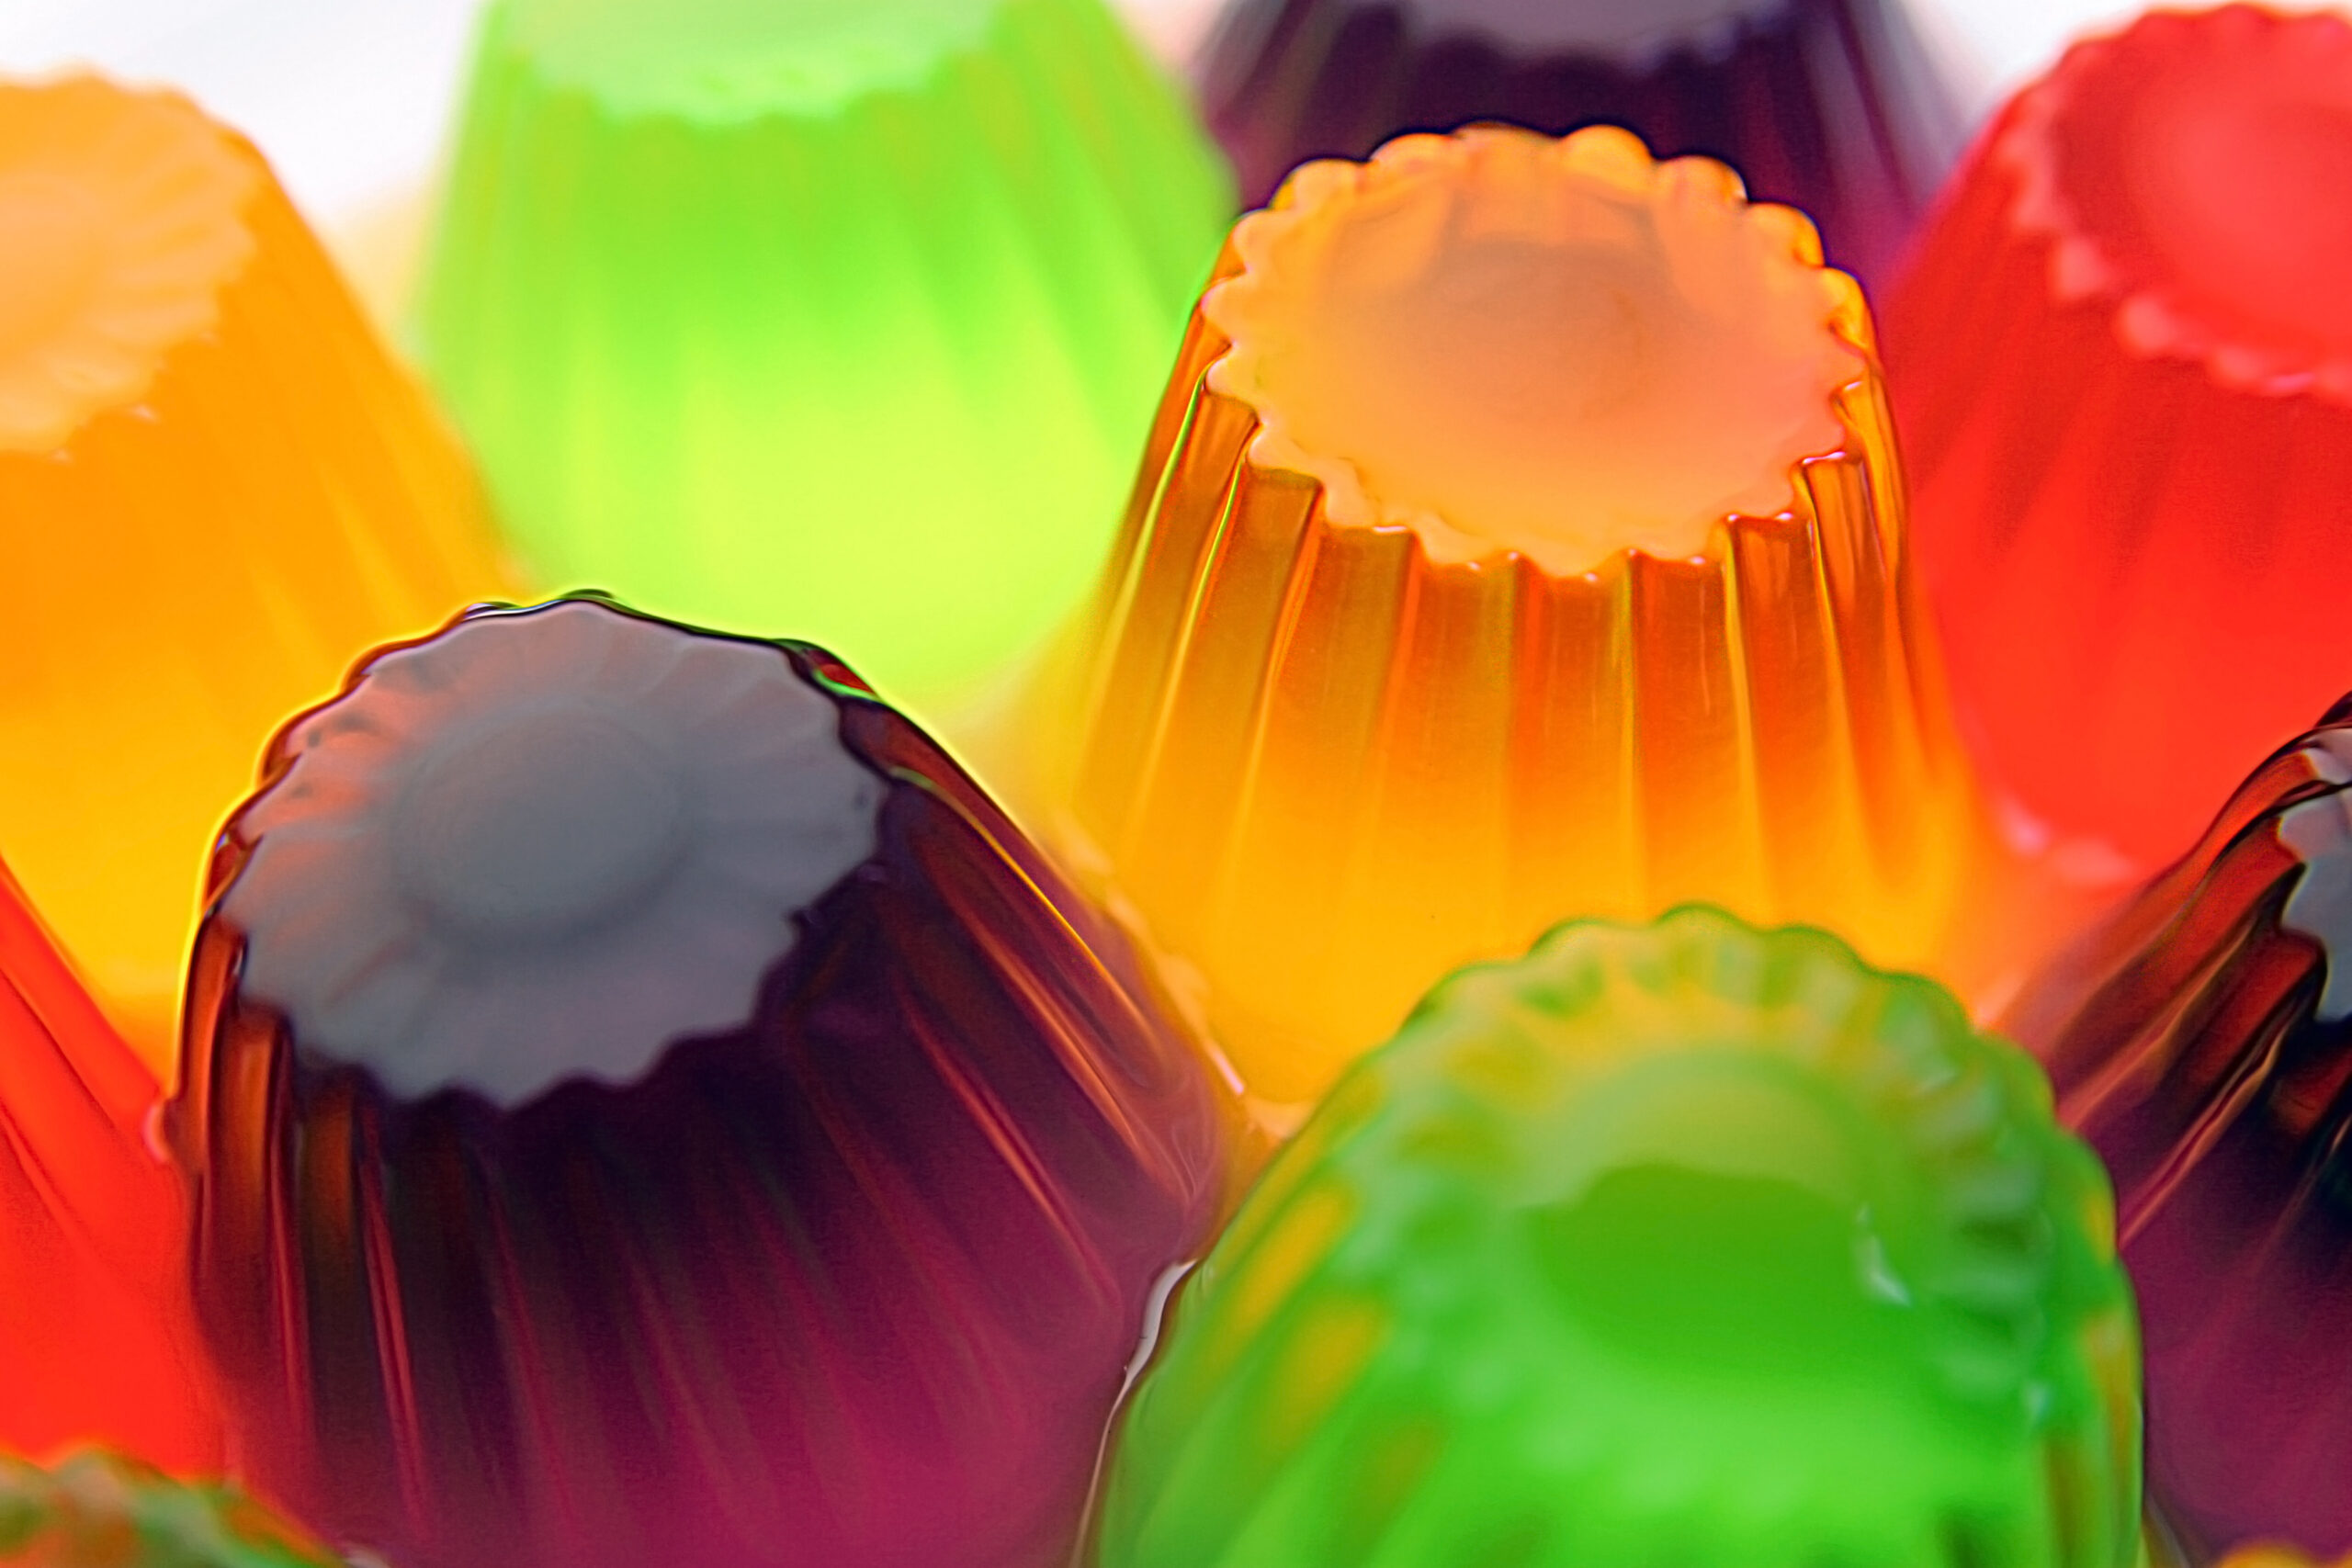 Imagen de varias gelatinas de diferentes sabores y colores